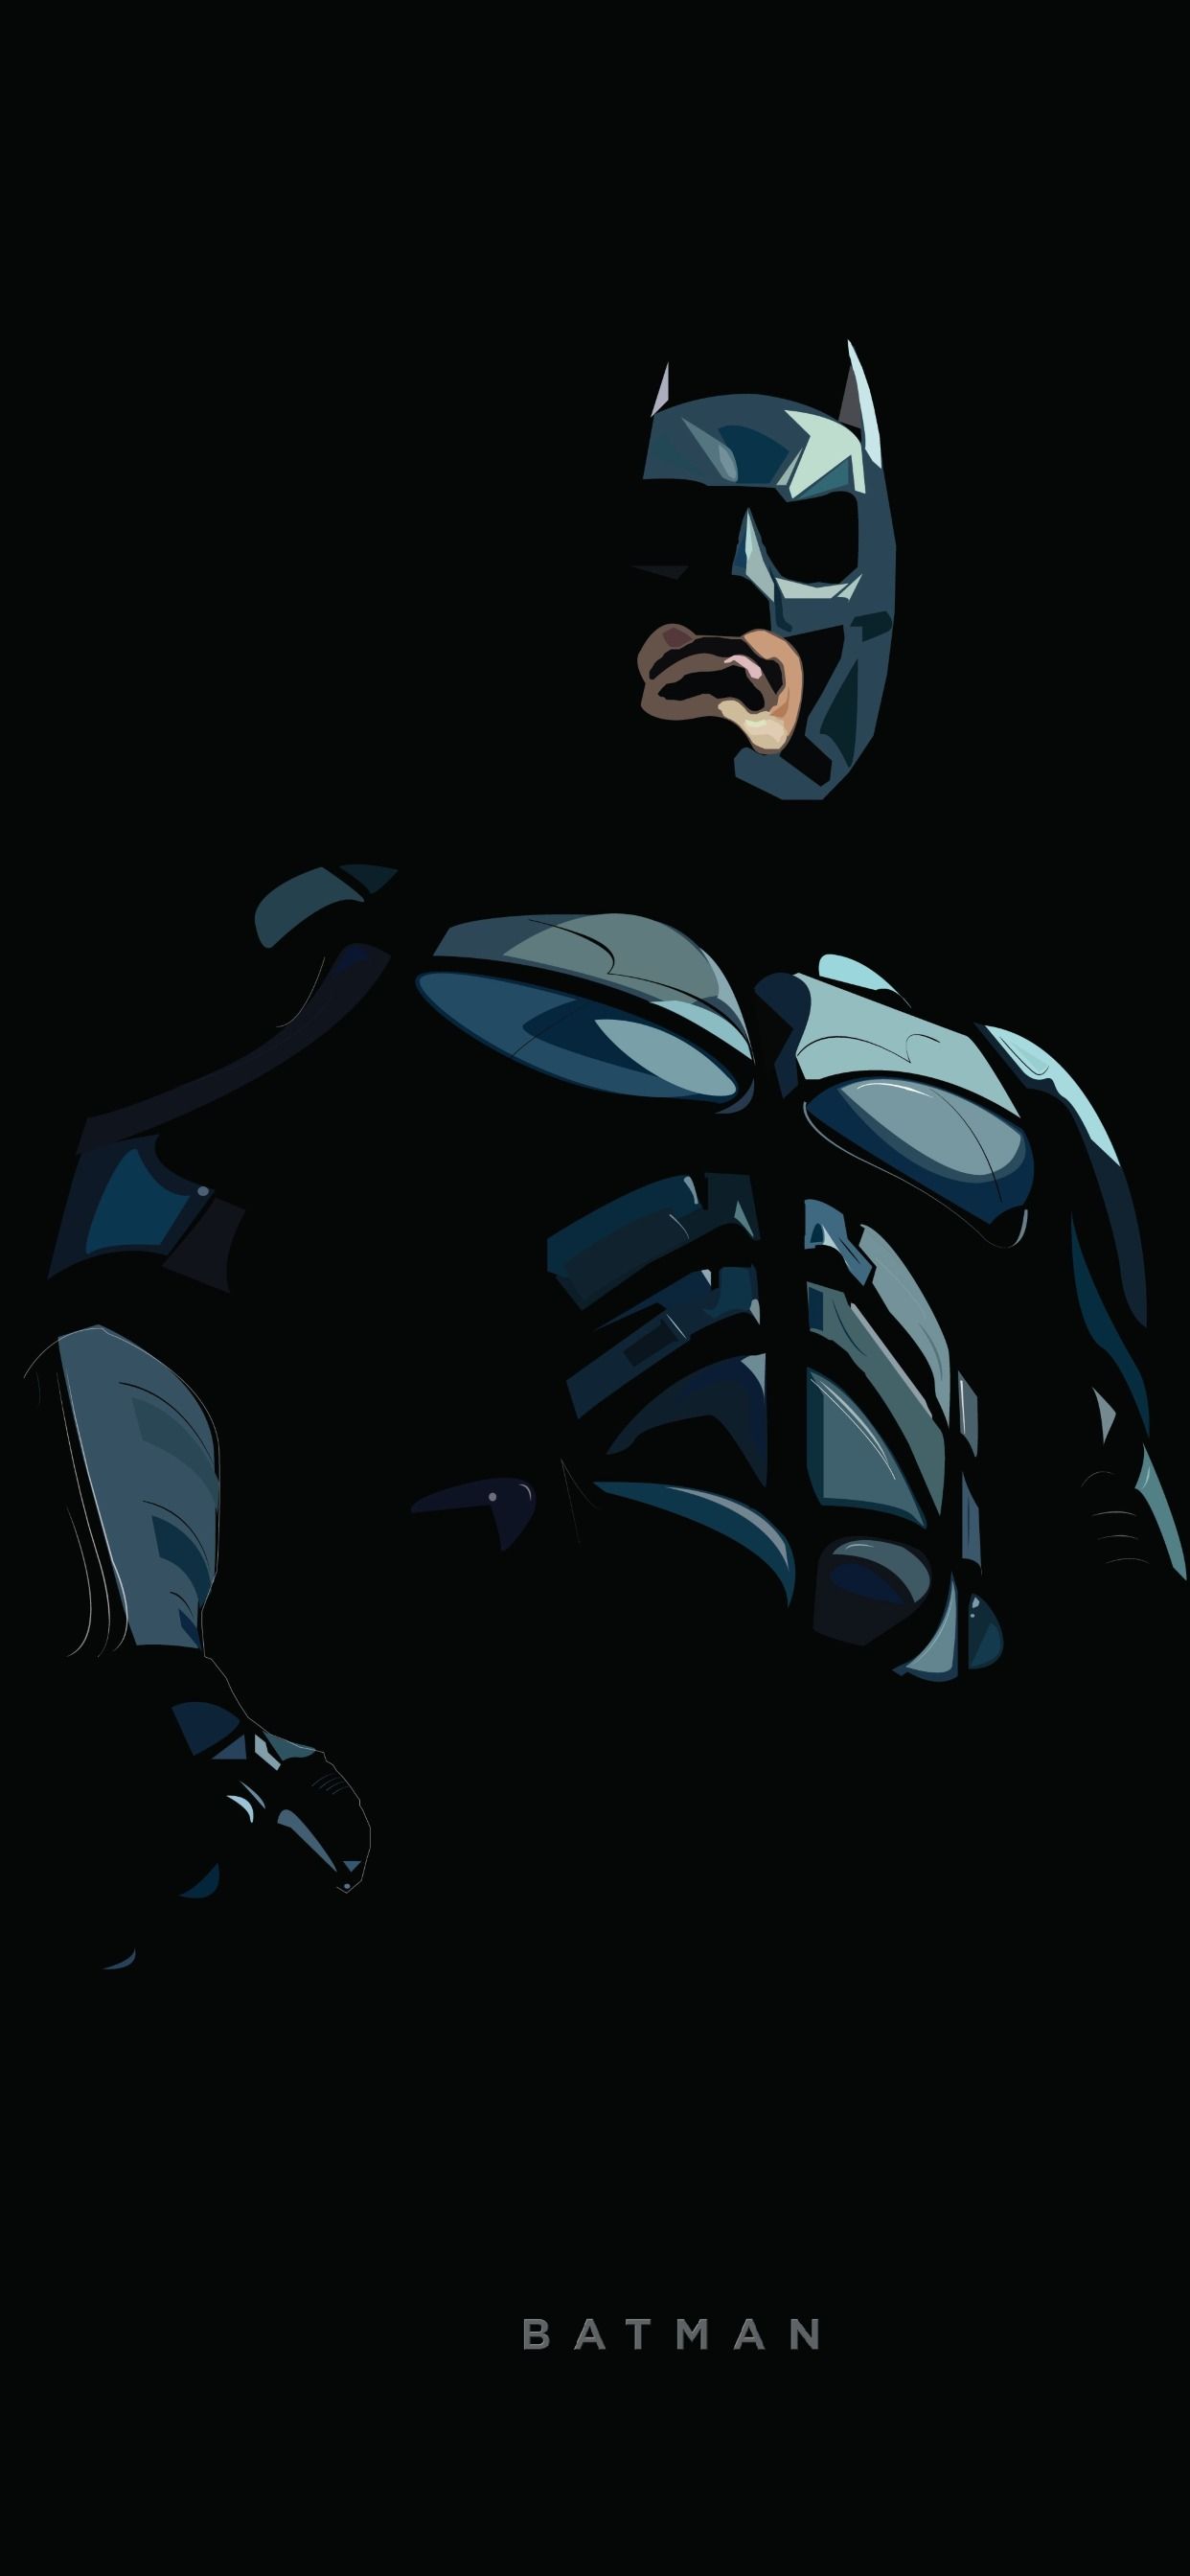 Batman Minimal Illustration iPhone XS MAX Wallpaper, HD